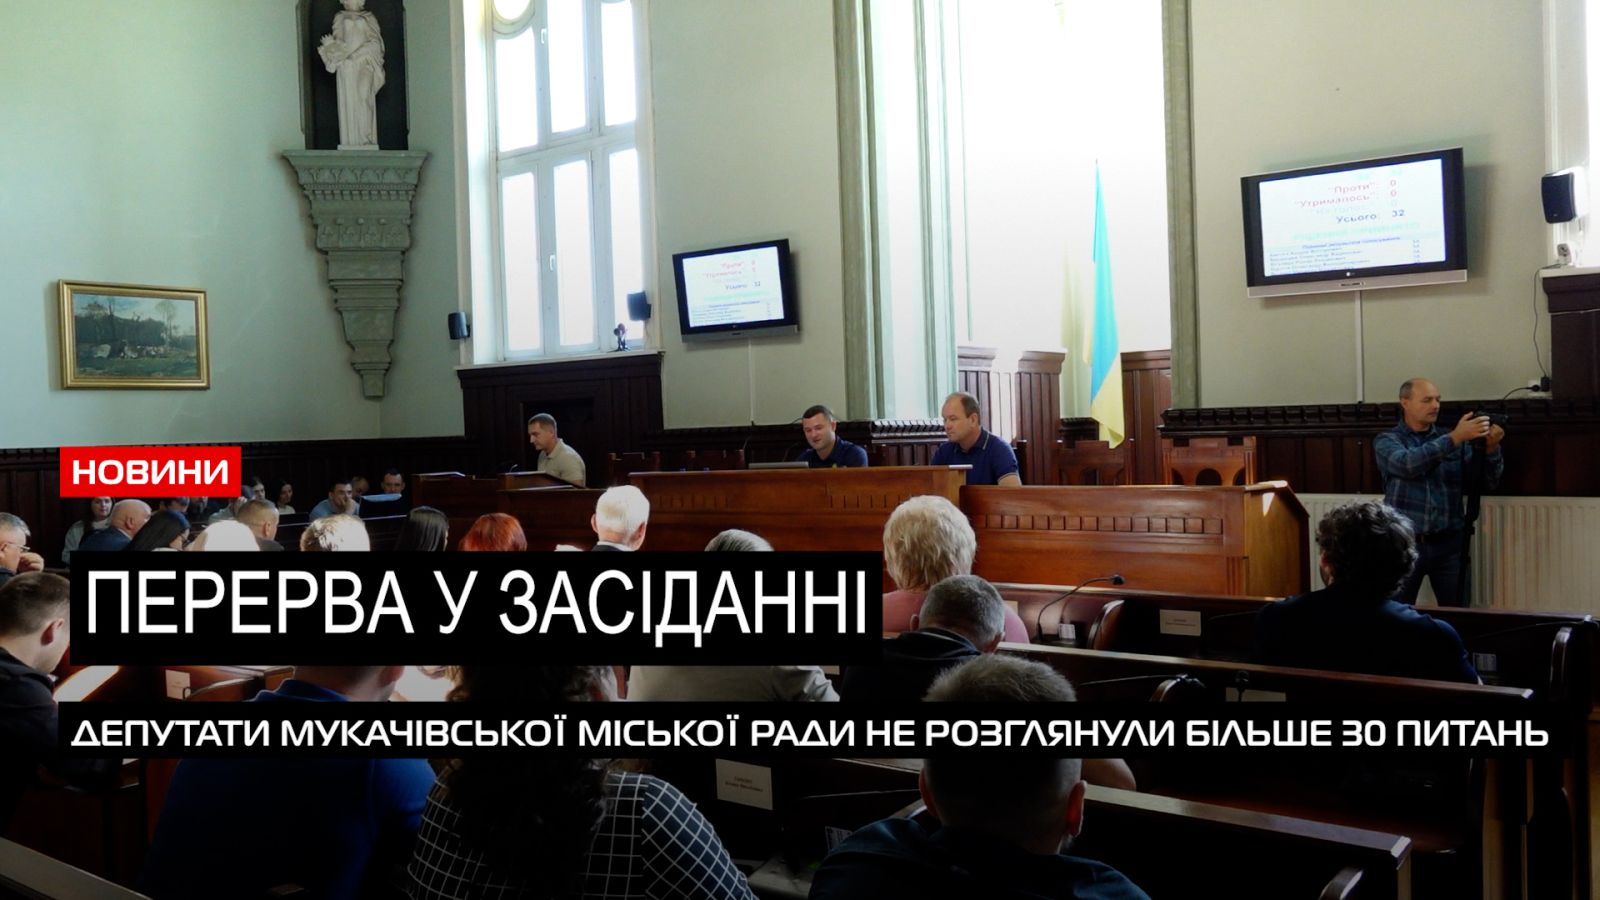  Позачергове засідання: чому сесія Мукачівської міськради залишилася не закритою? (ВІДЕО) 0